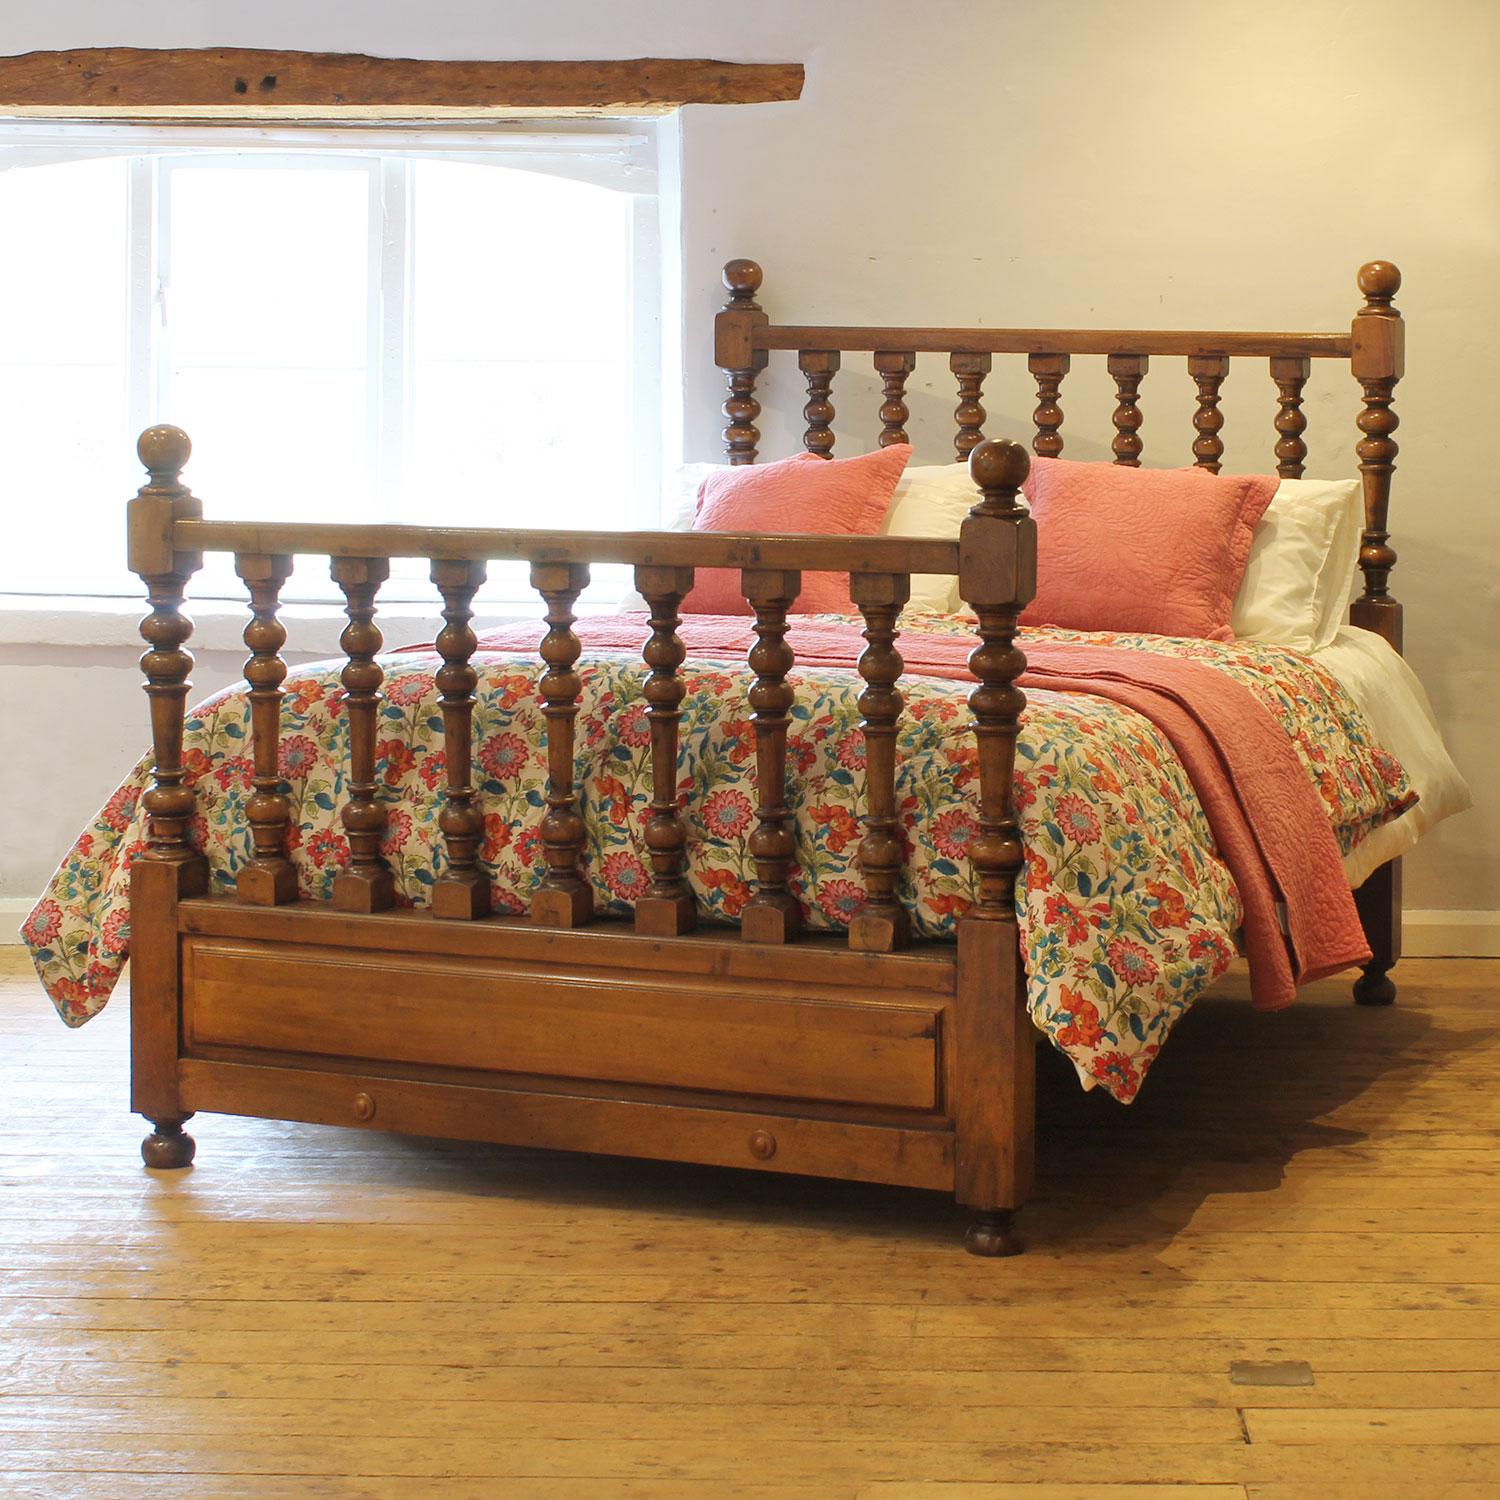 Ein einfaches Spindelholzbett aus Nussbaum aus der Mitte des zwanzigsten Jahrhunderts.

Dieses Bett ist für ein US-Queen-Size-Bett (oder ein UK-King-Size-Bett) mit einer Breite von 60 Fuß und einer Matratze geeignet.

Im Preis enthalten ist ein